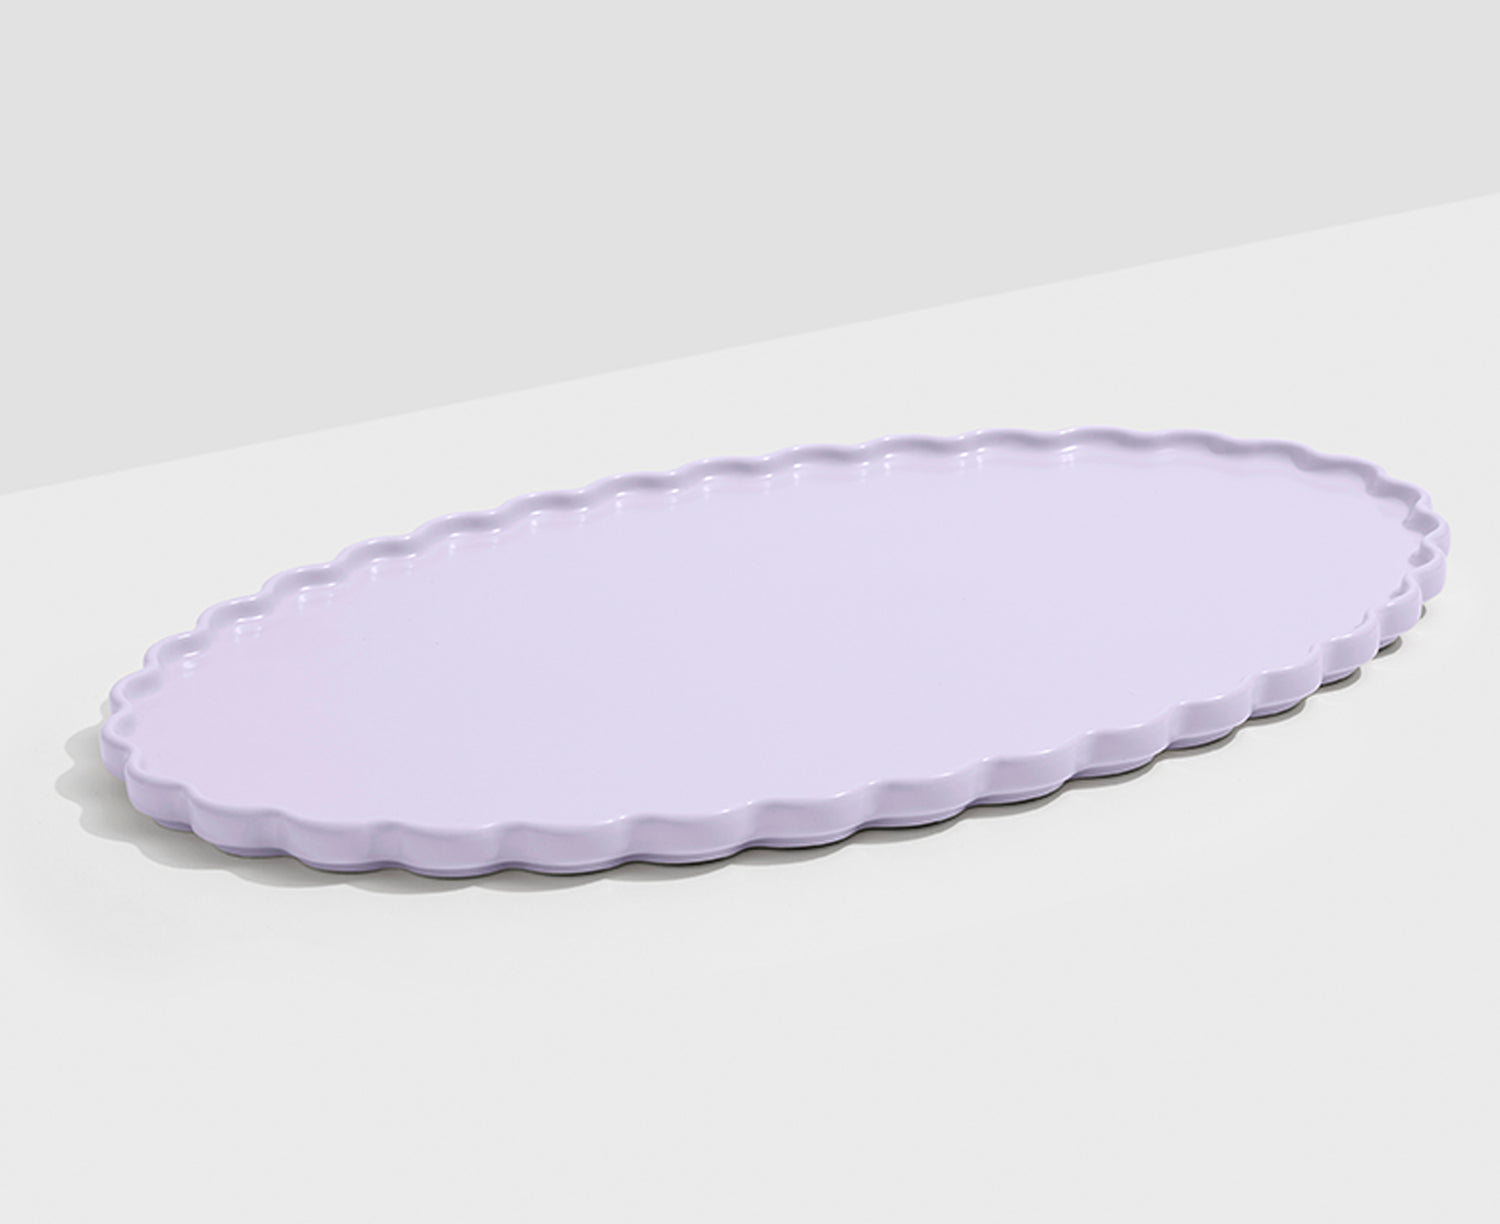 Wave Oval Serving Platter in Lavender by Fazeek